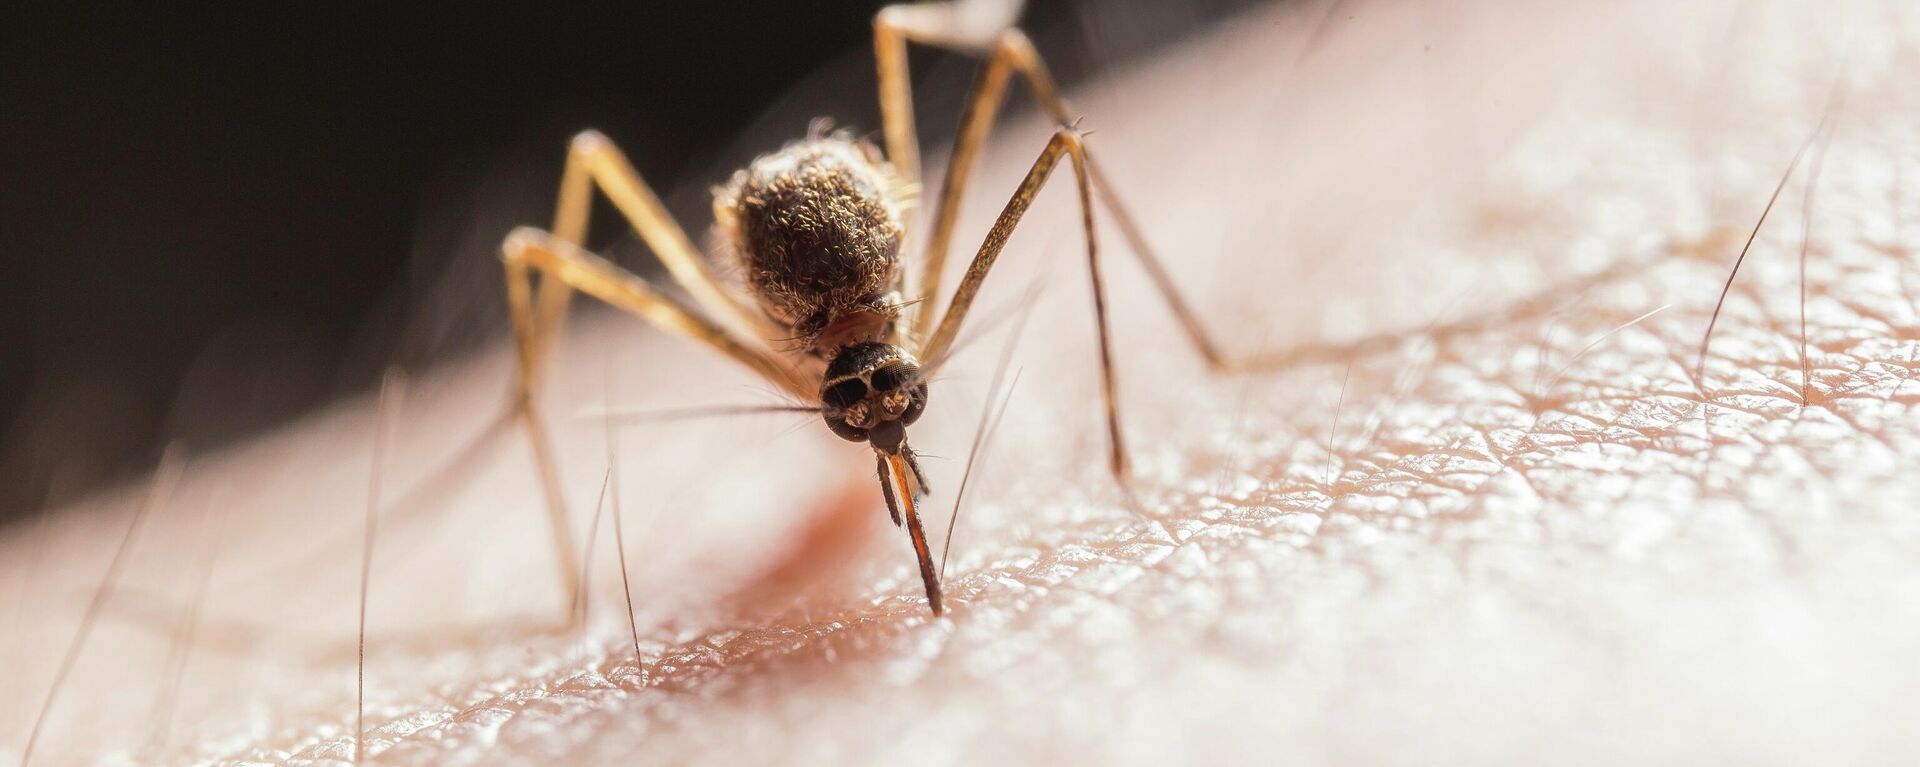 Un mosquito, imagen ilustrativa - Sputnik Mundo, 1920, 19.07.2021